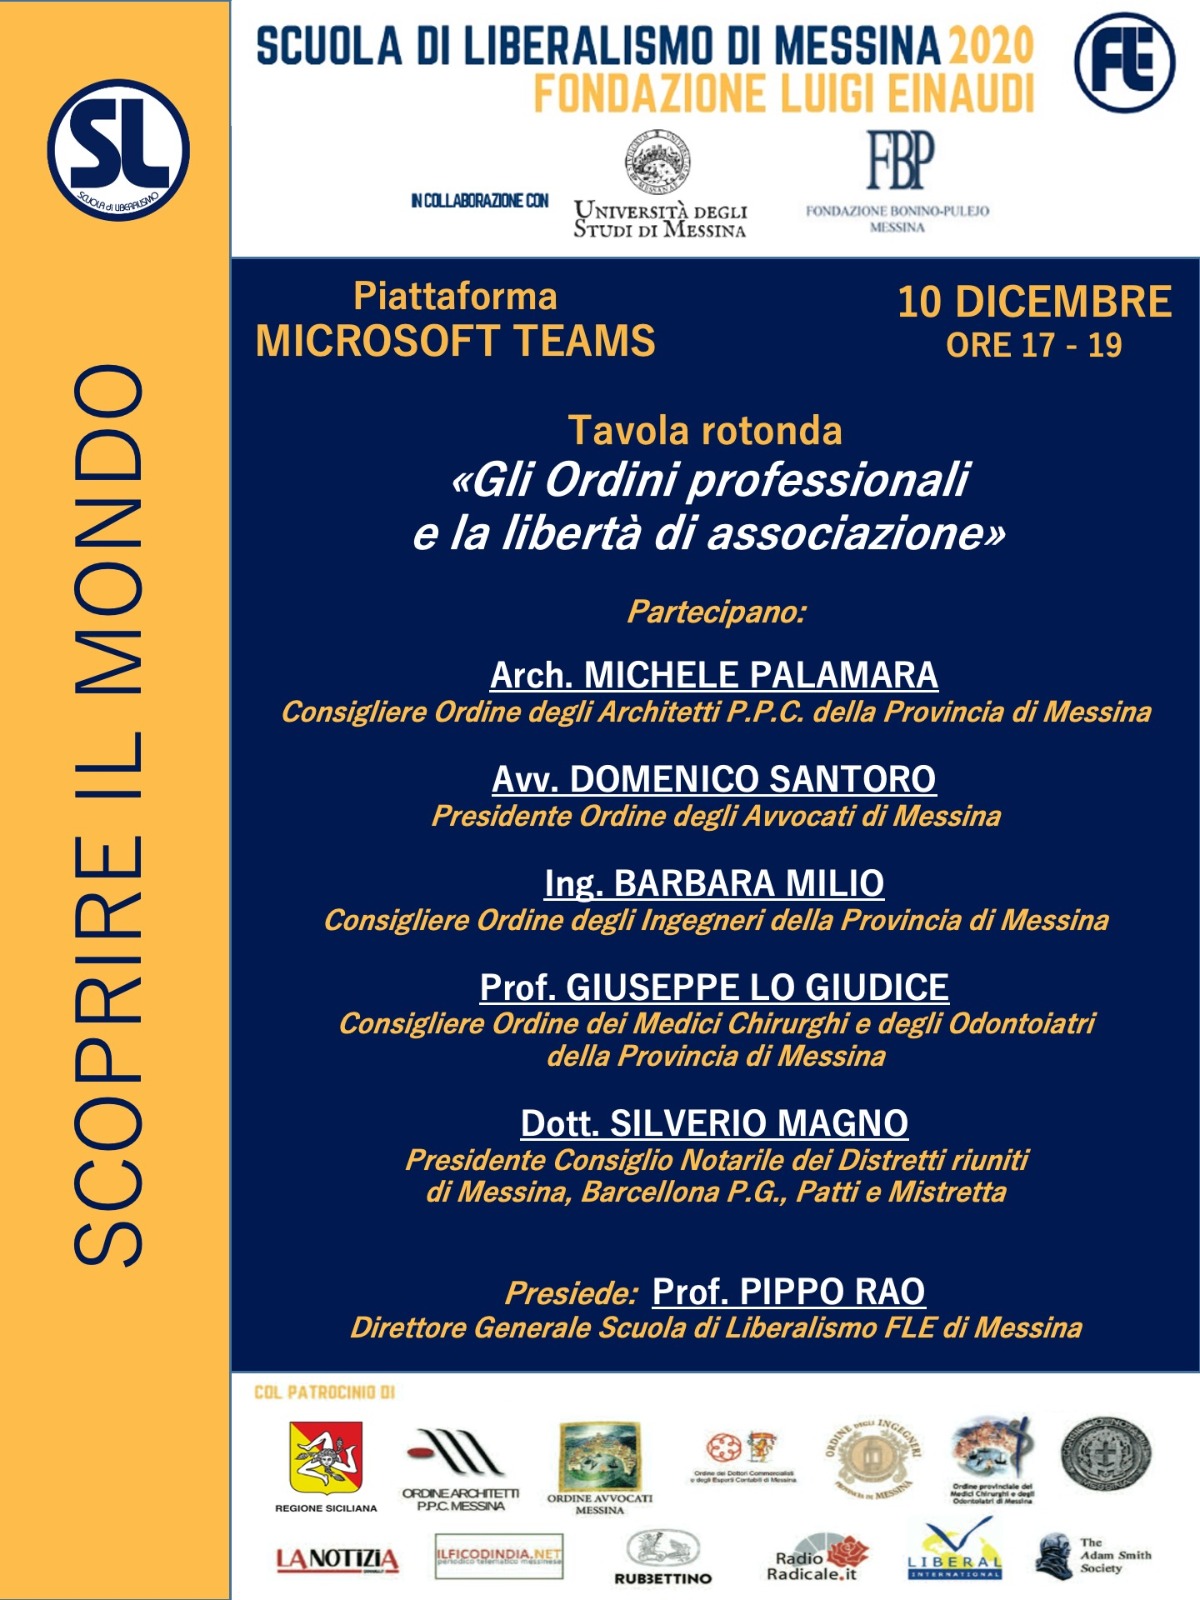 Scuola di Liberalismo 2020 Messina: 10 dicembre “tavola rotonda” sul tema “Gli Ordini professionali e la libertà di associazione”